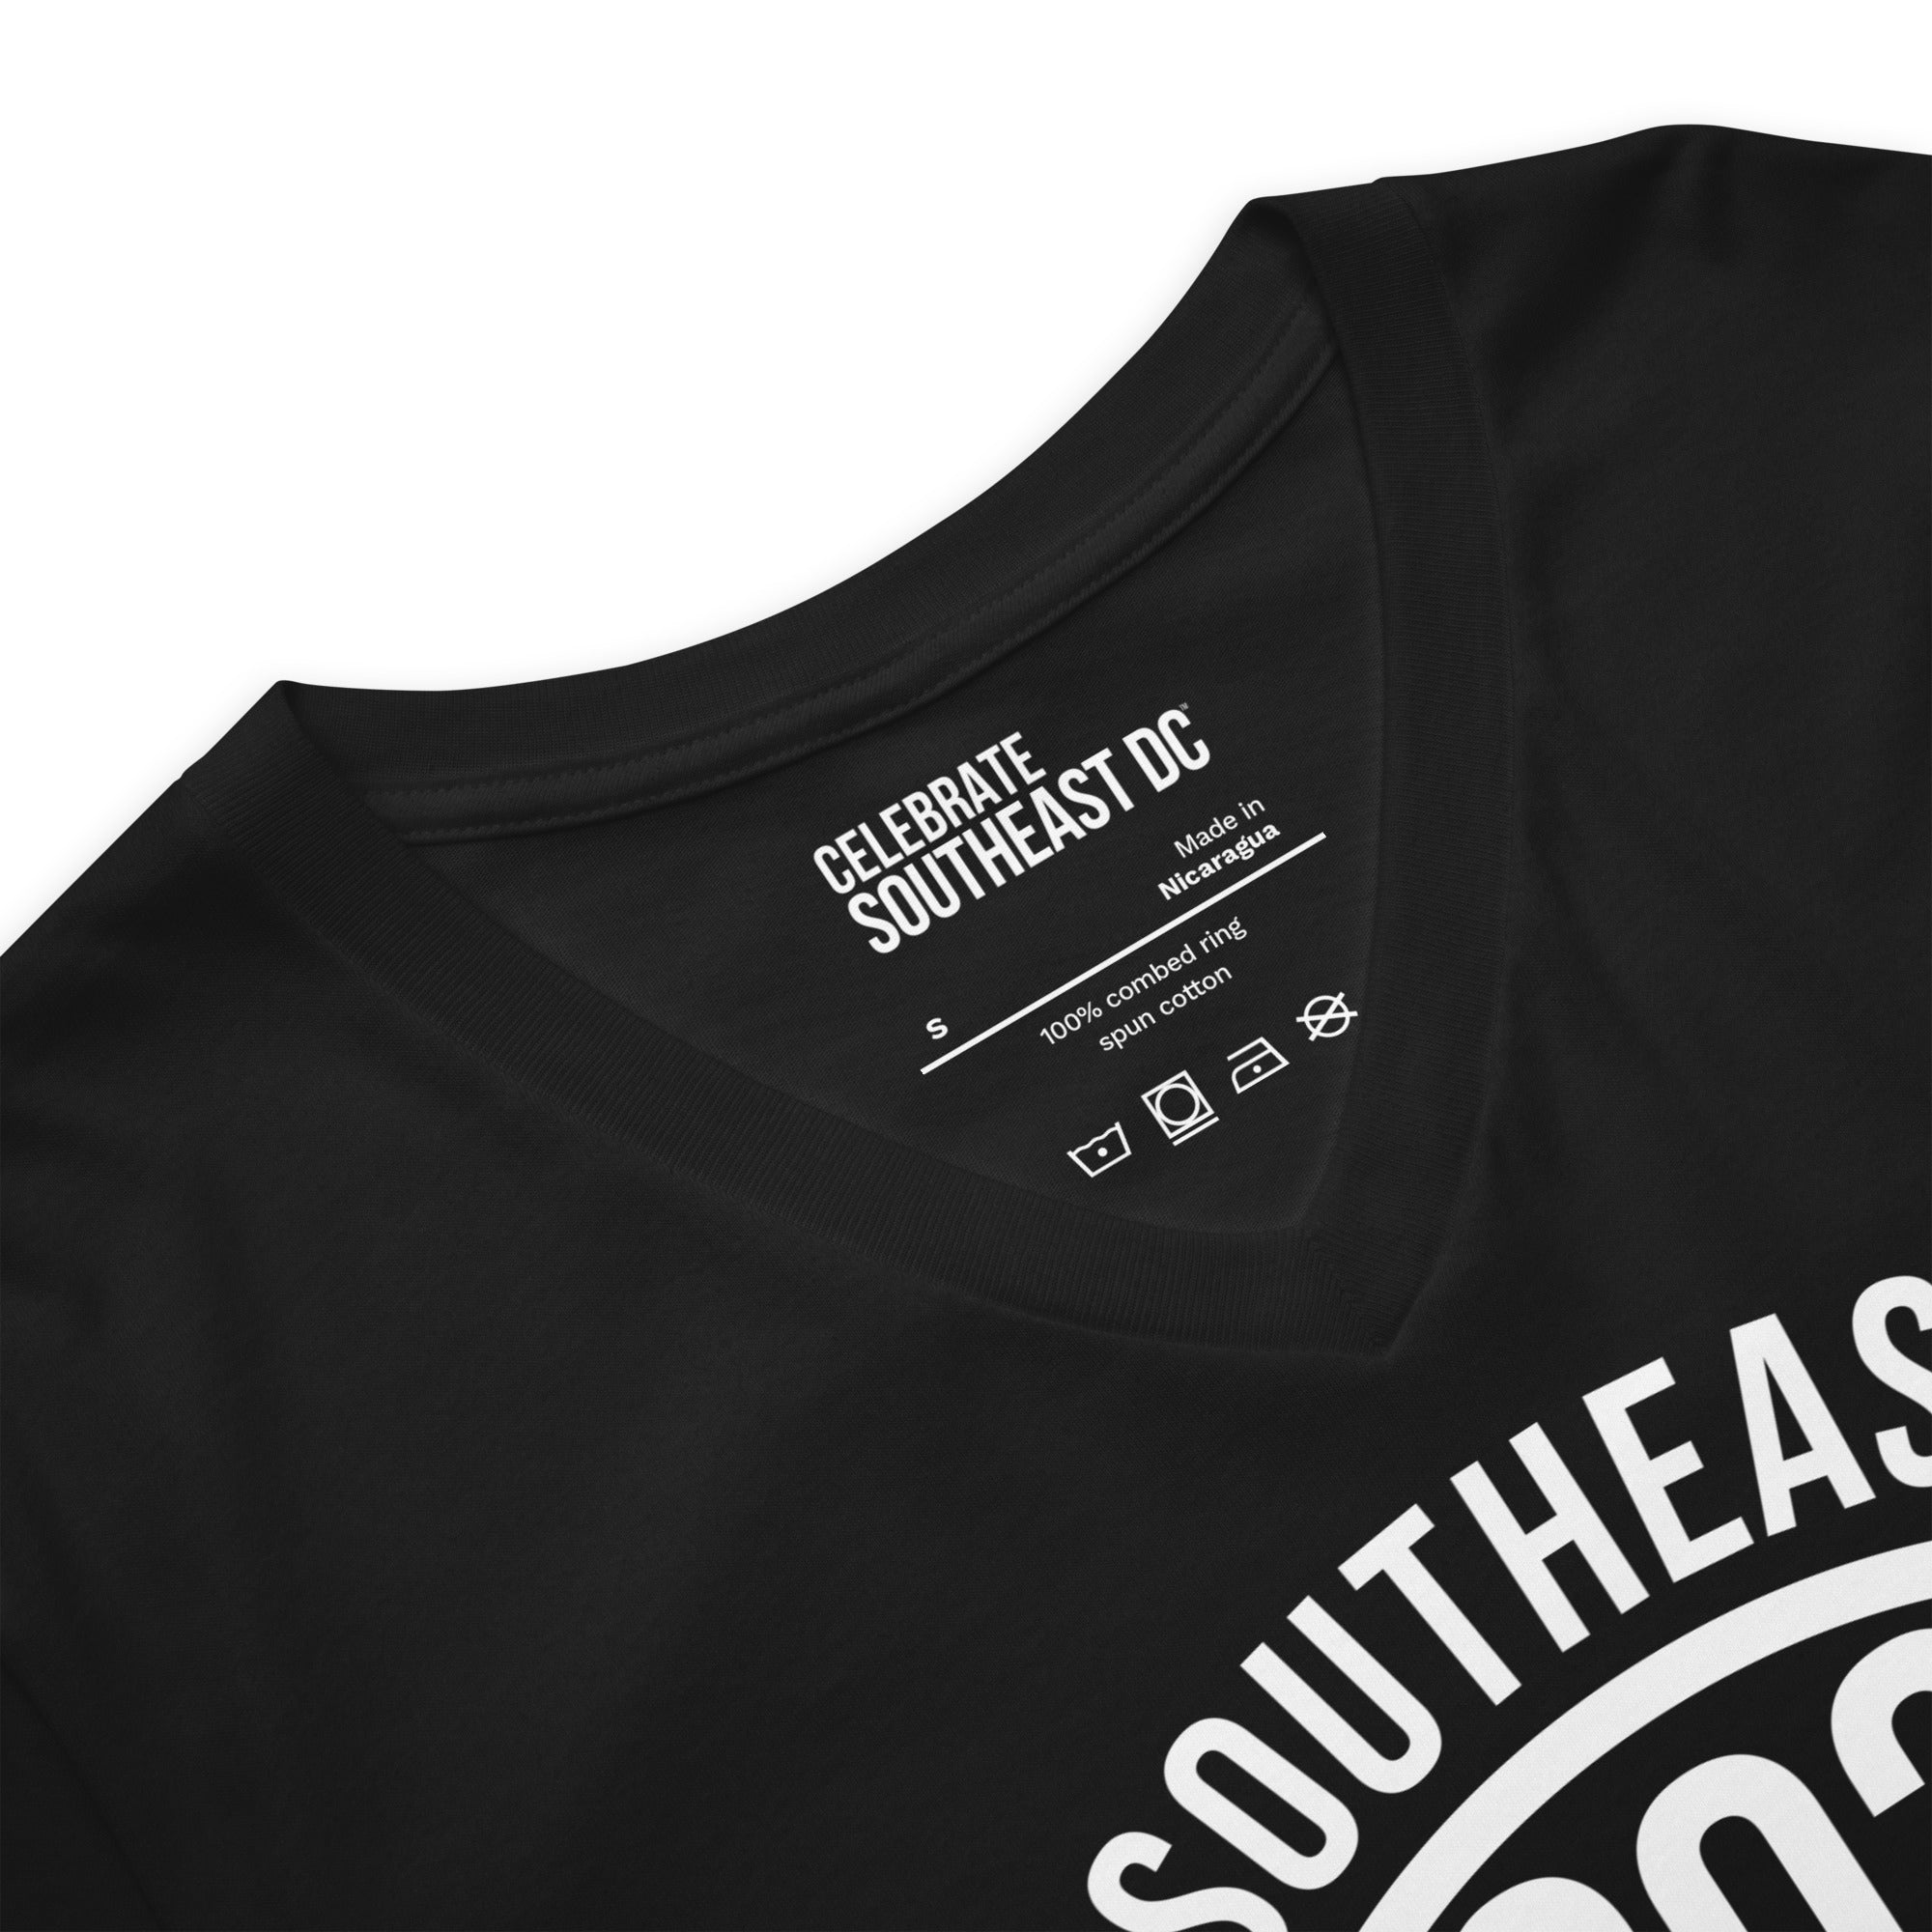 "SOUTHEAST WASHINGTON DC / 202 (Emblem)"  -Black Unisex Short Sleeve V-Neck T-Shirt